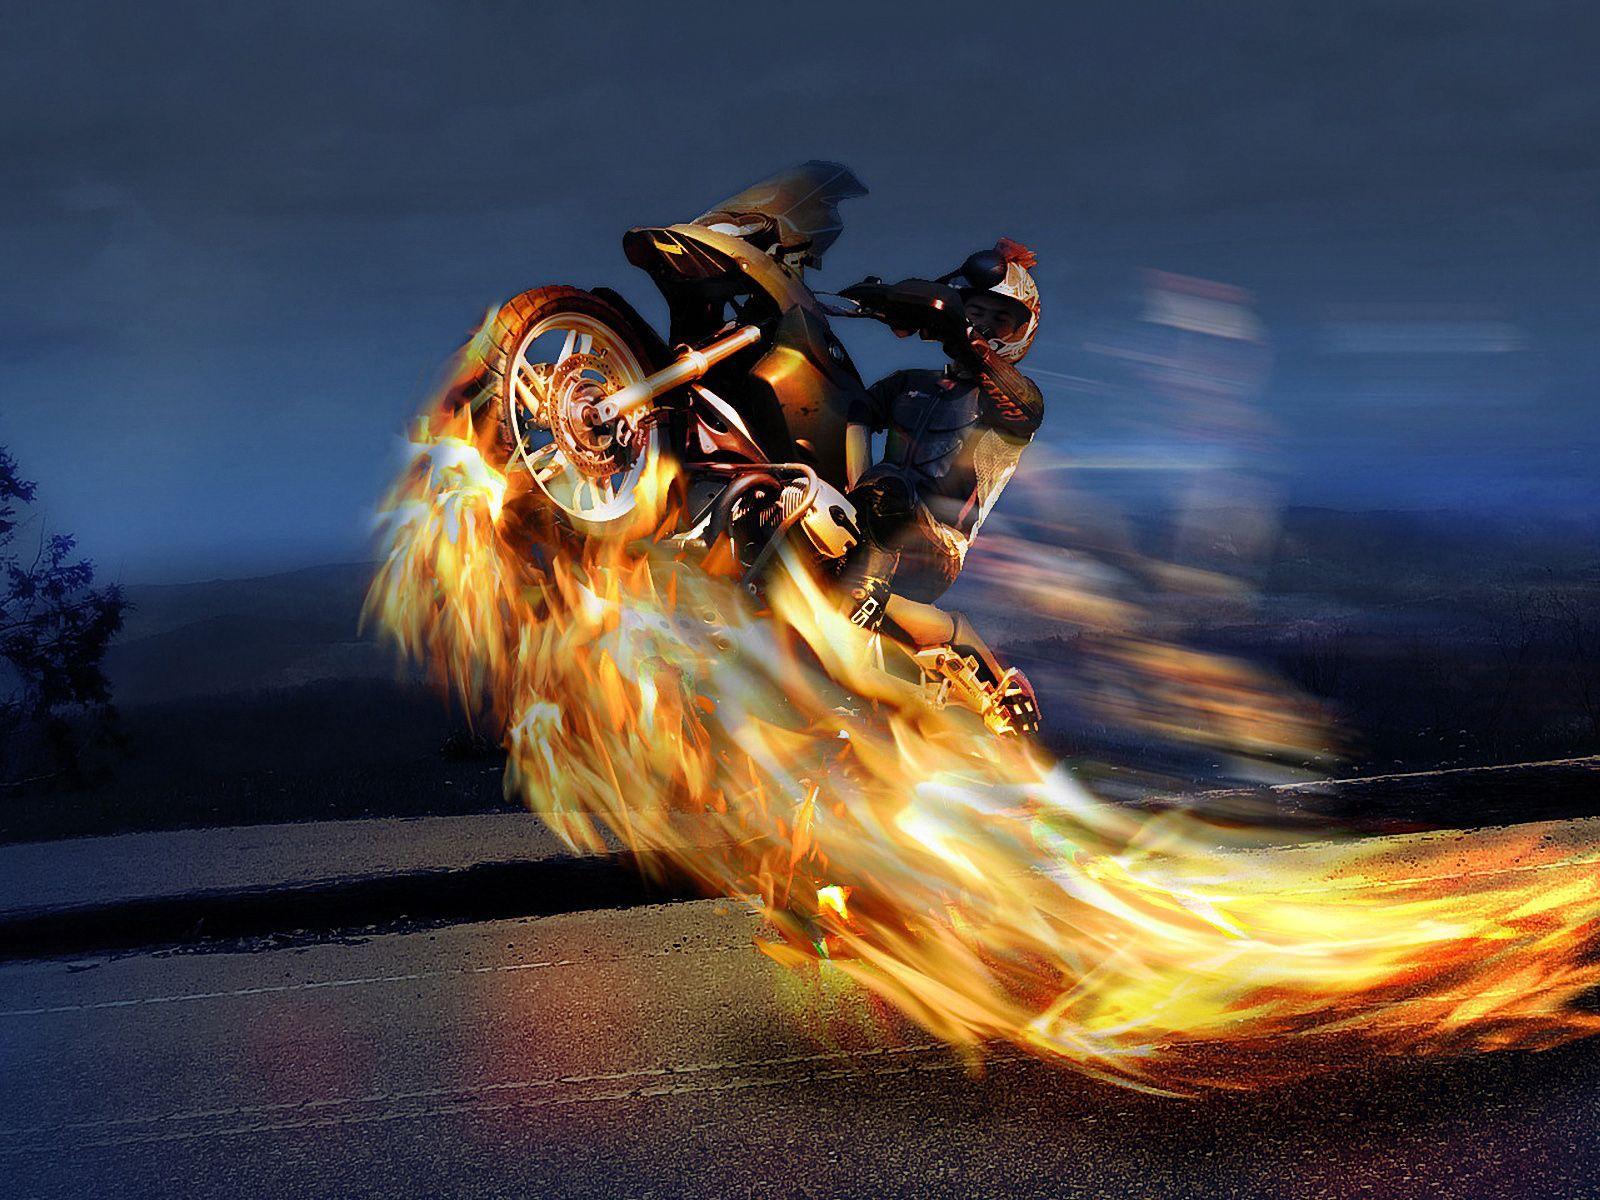 Rider on Fire HD Widescreen Desktop Wallpaper. moto